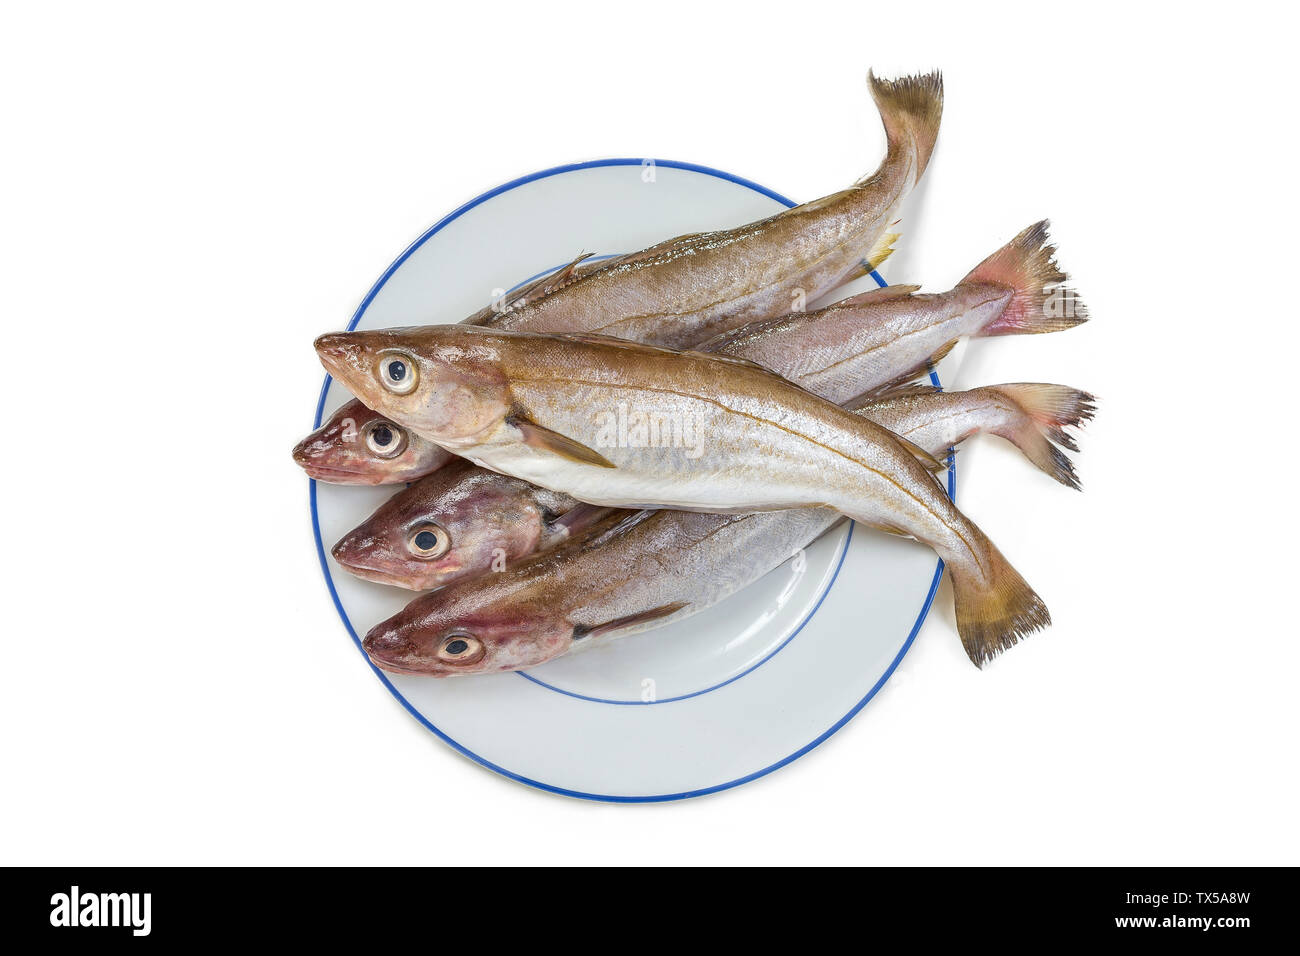 Des poissons ou de Merlan Merlangius ou whithing fild sur une plaque sur fond blanc Banque D'Images